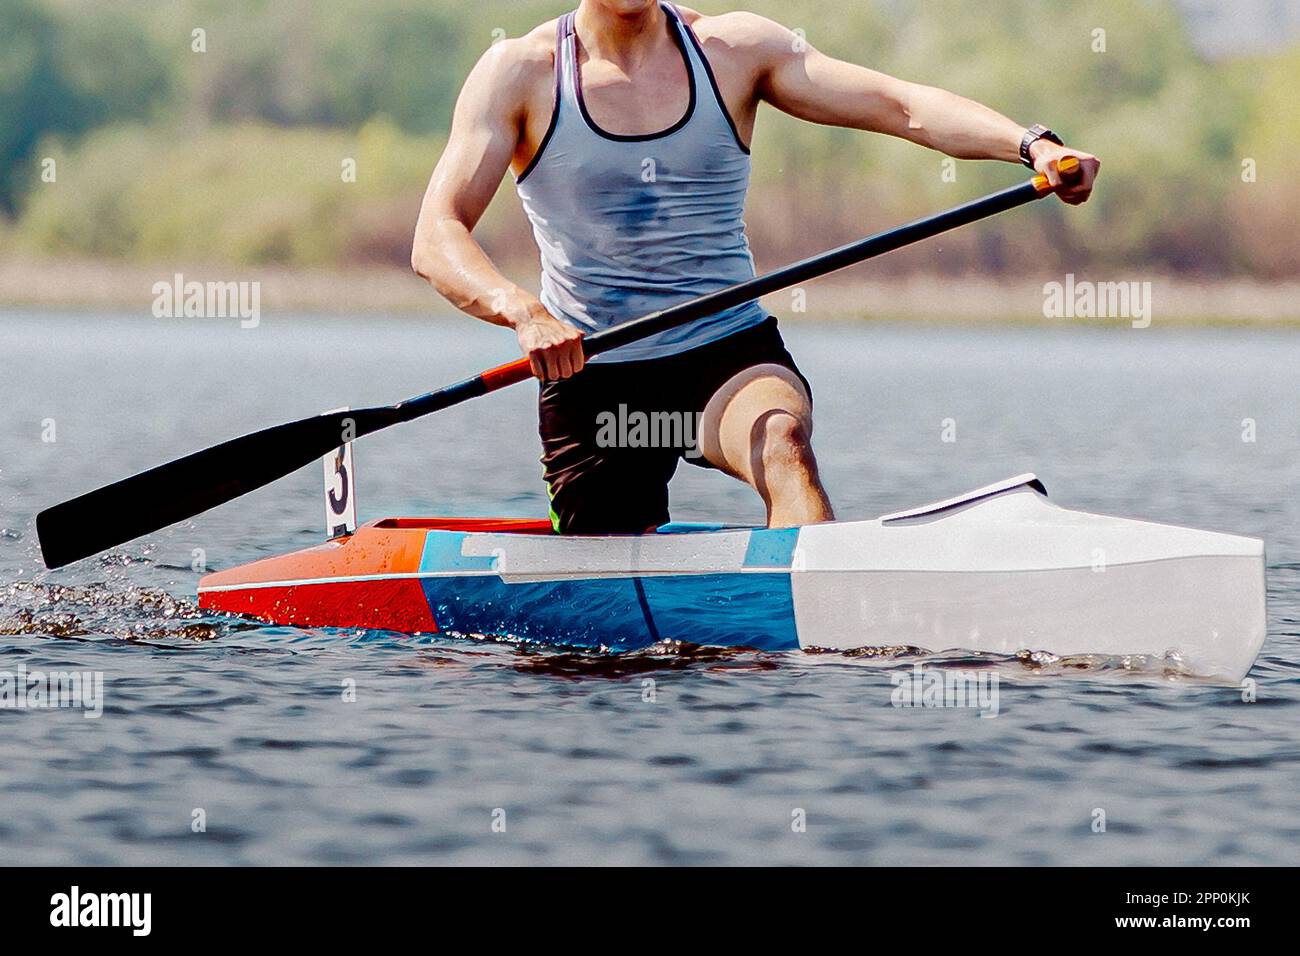 Vorderansicht männlicher Sportler Kanufahrer auf einmaliger Kajakfahrt im Kanu, Sommer Outdoor-Sport Stockfoto